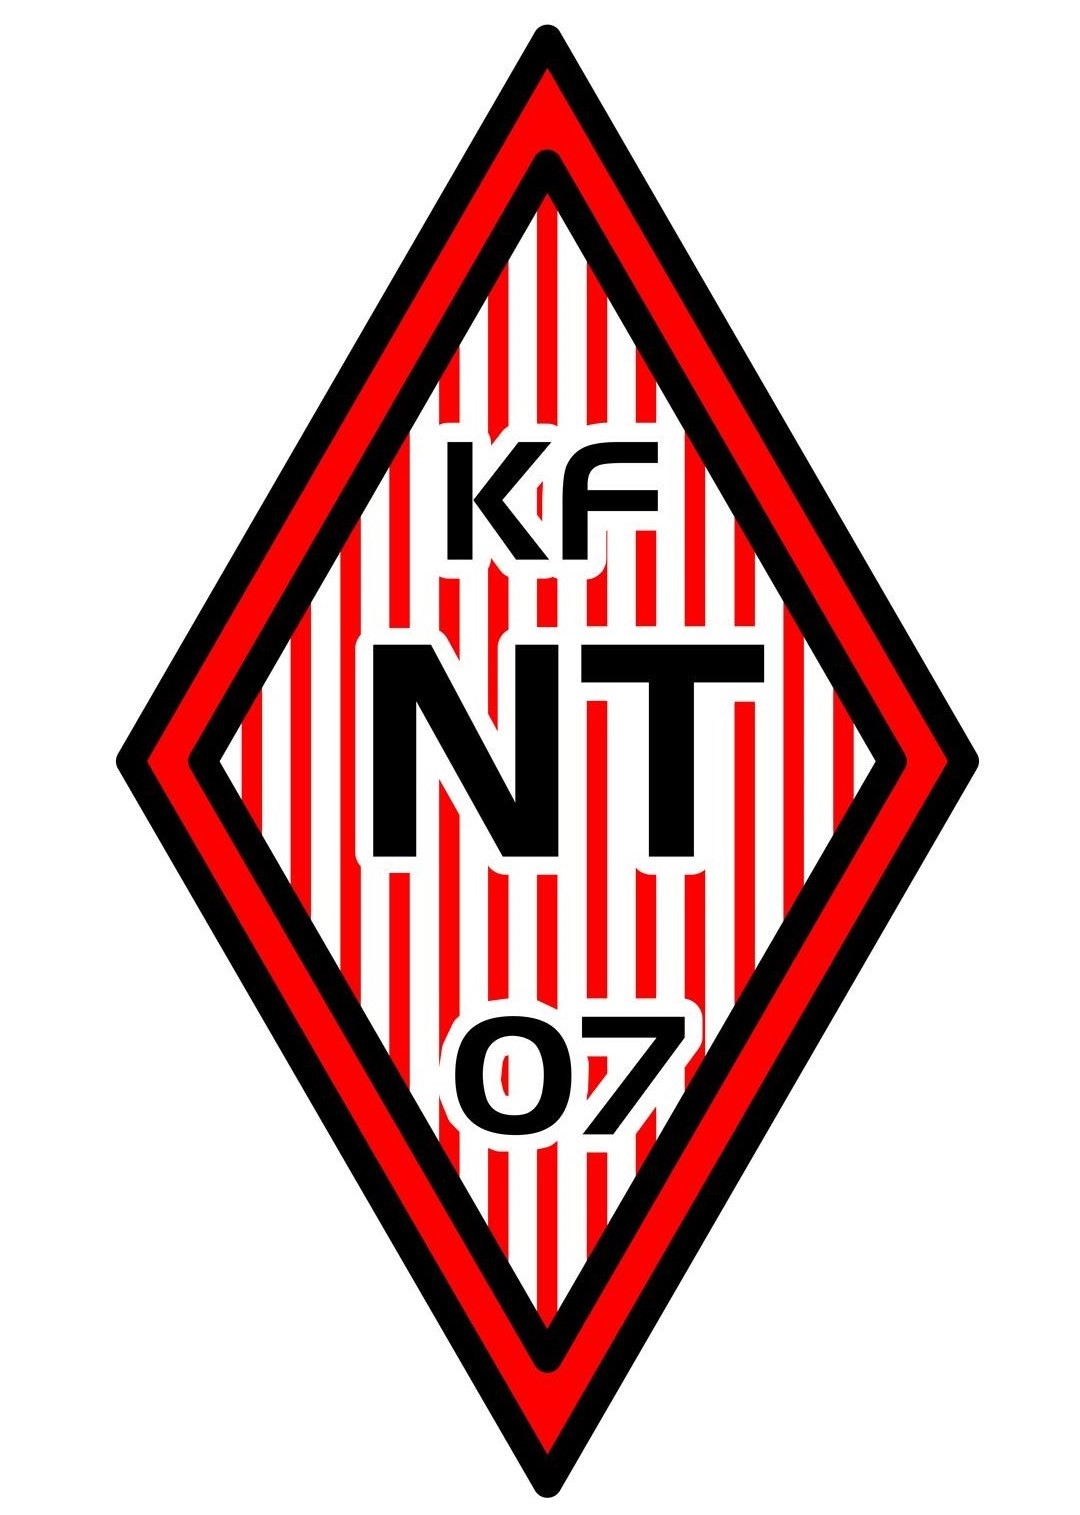 Soccerstar - KFNT